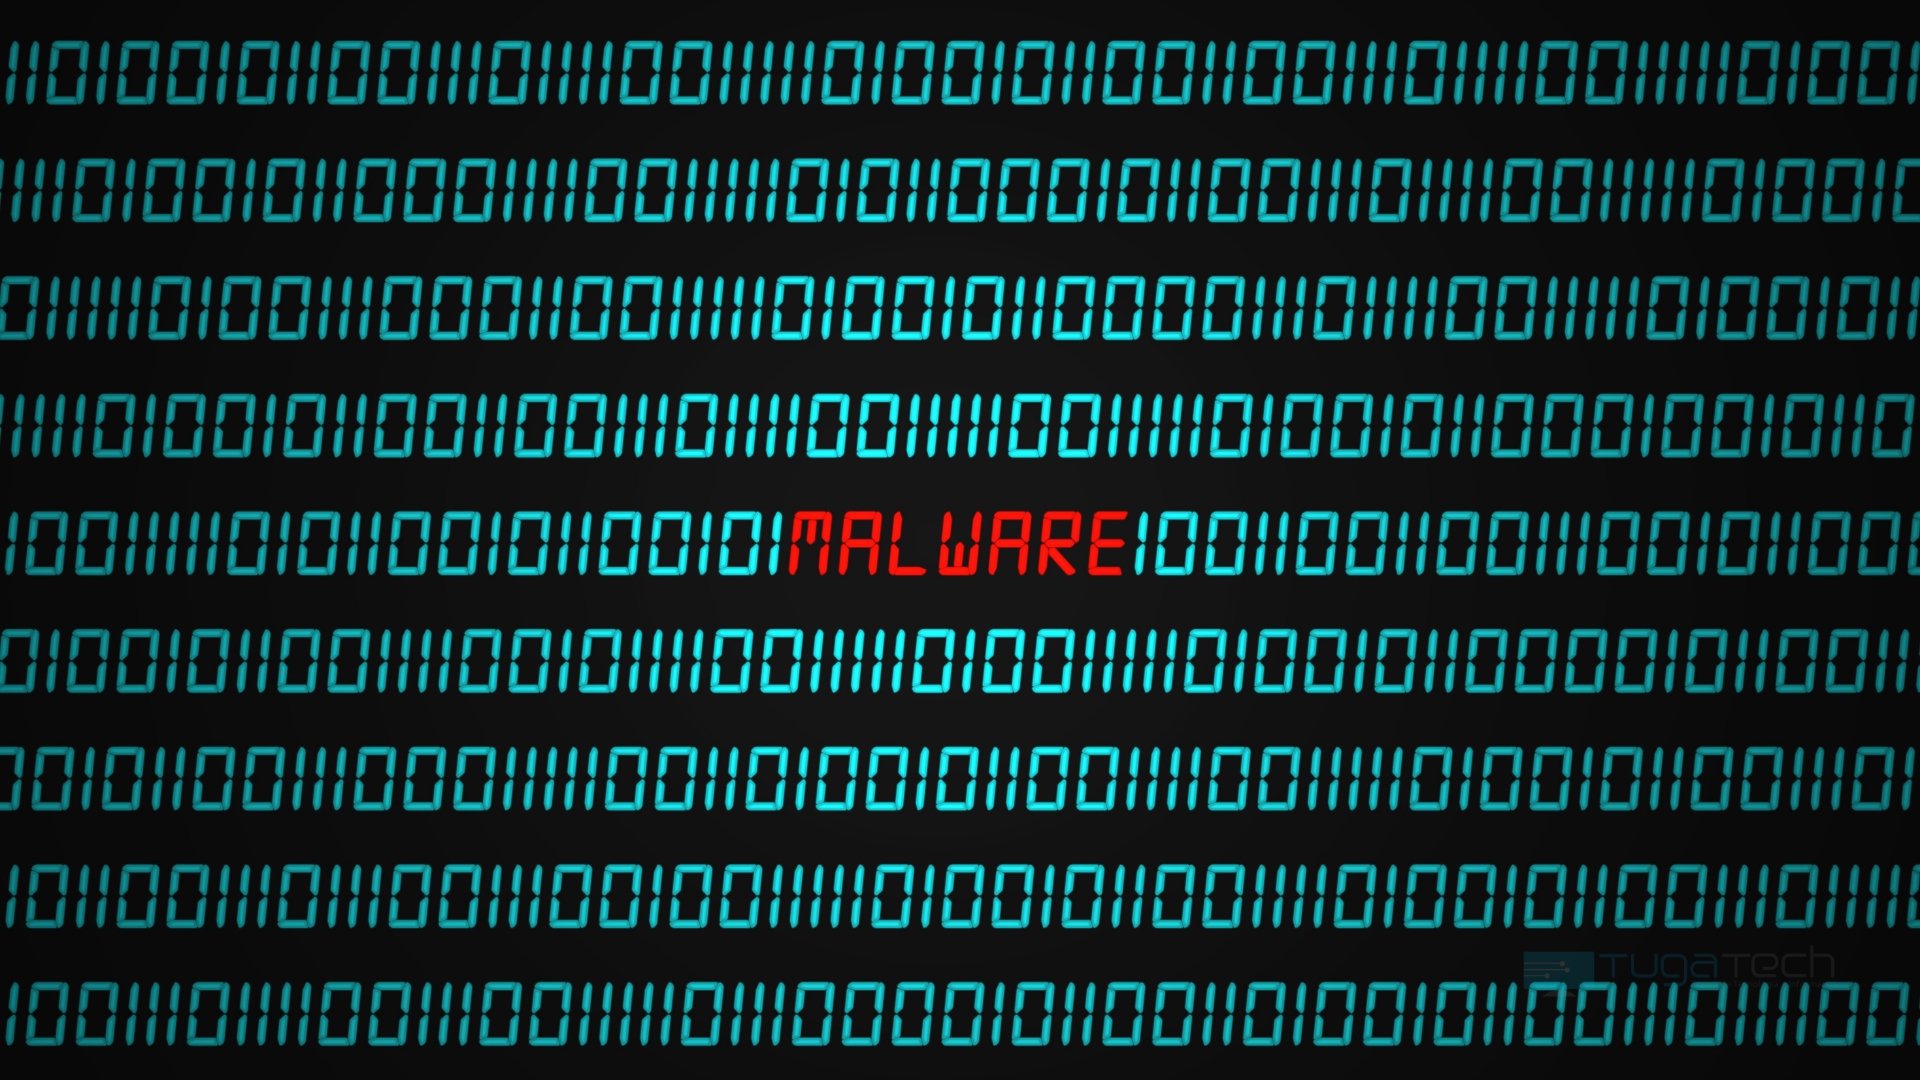 imagem de malware